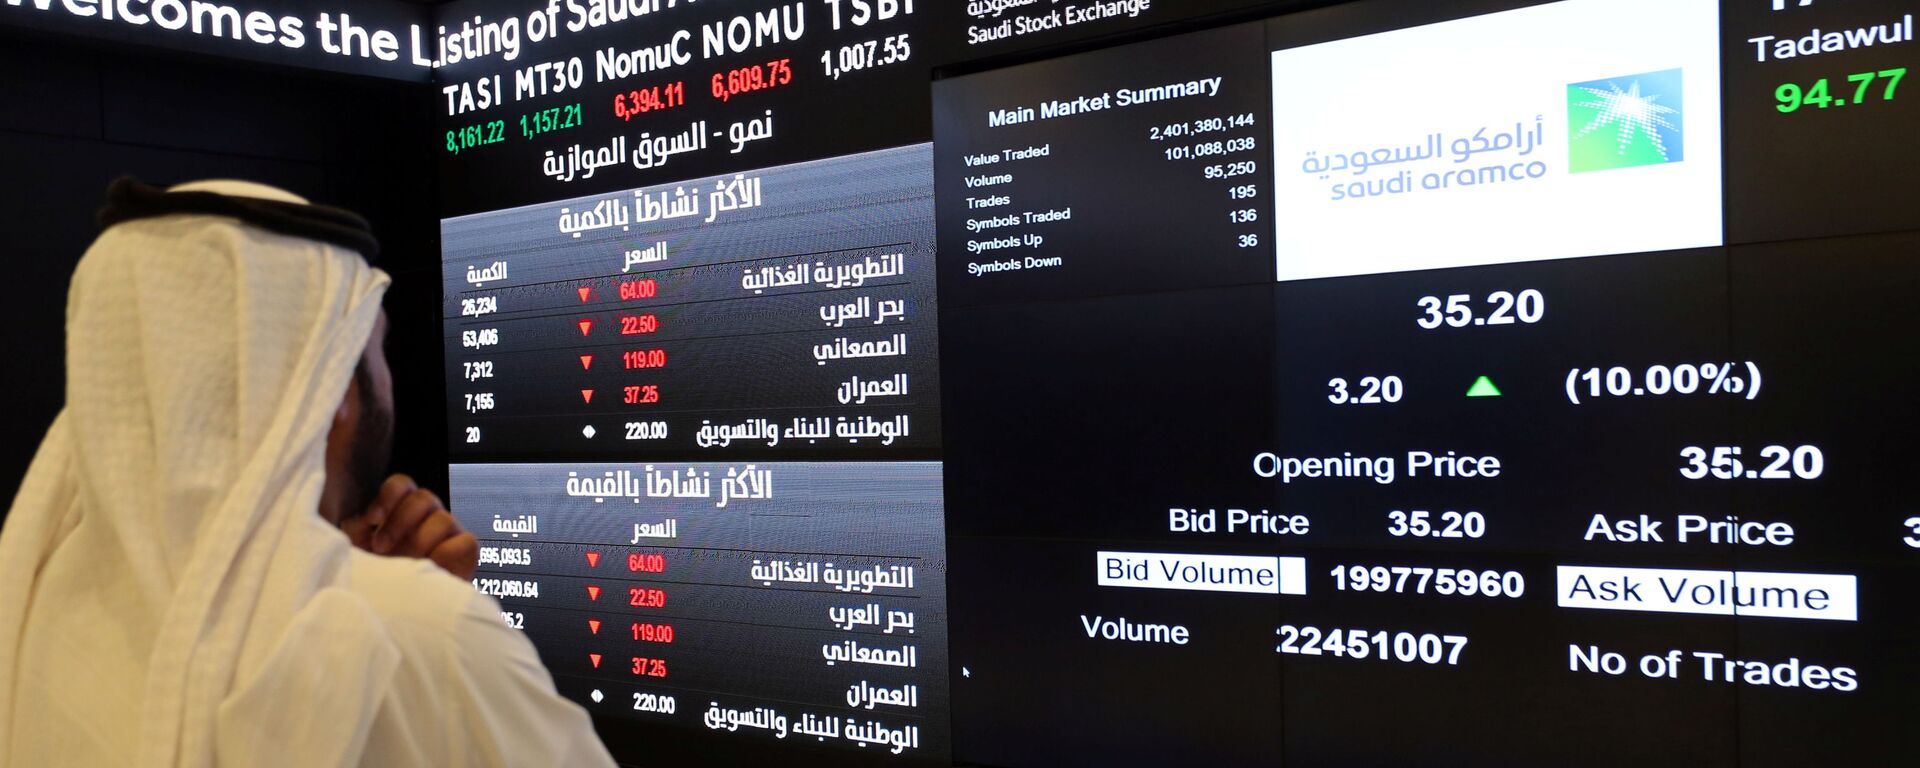 شاشة تعرض معلومات الأسهم في السوق المالية السعودية (تداول)، في الرياض، السعودية 11 ديسمبر 2019 - سبوتنيك عربي, 1920, 23.09.2021